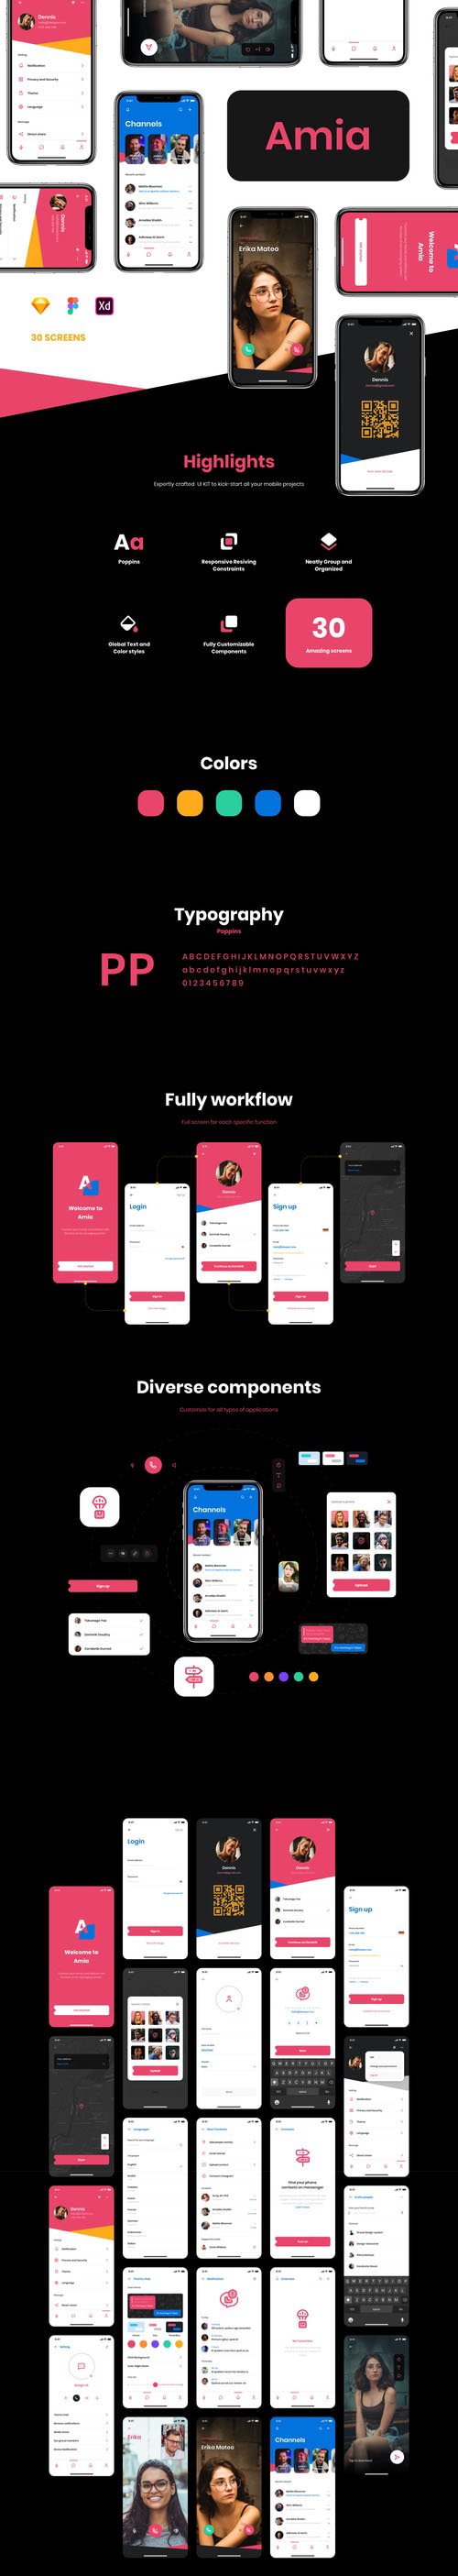 Amia - Messaging App UI Kit